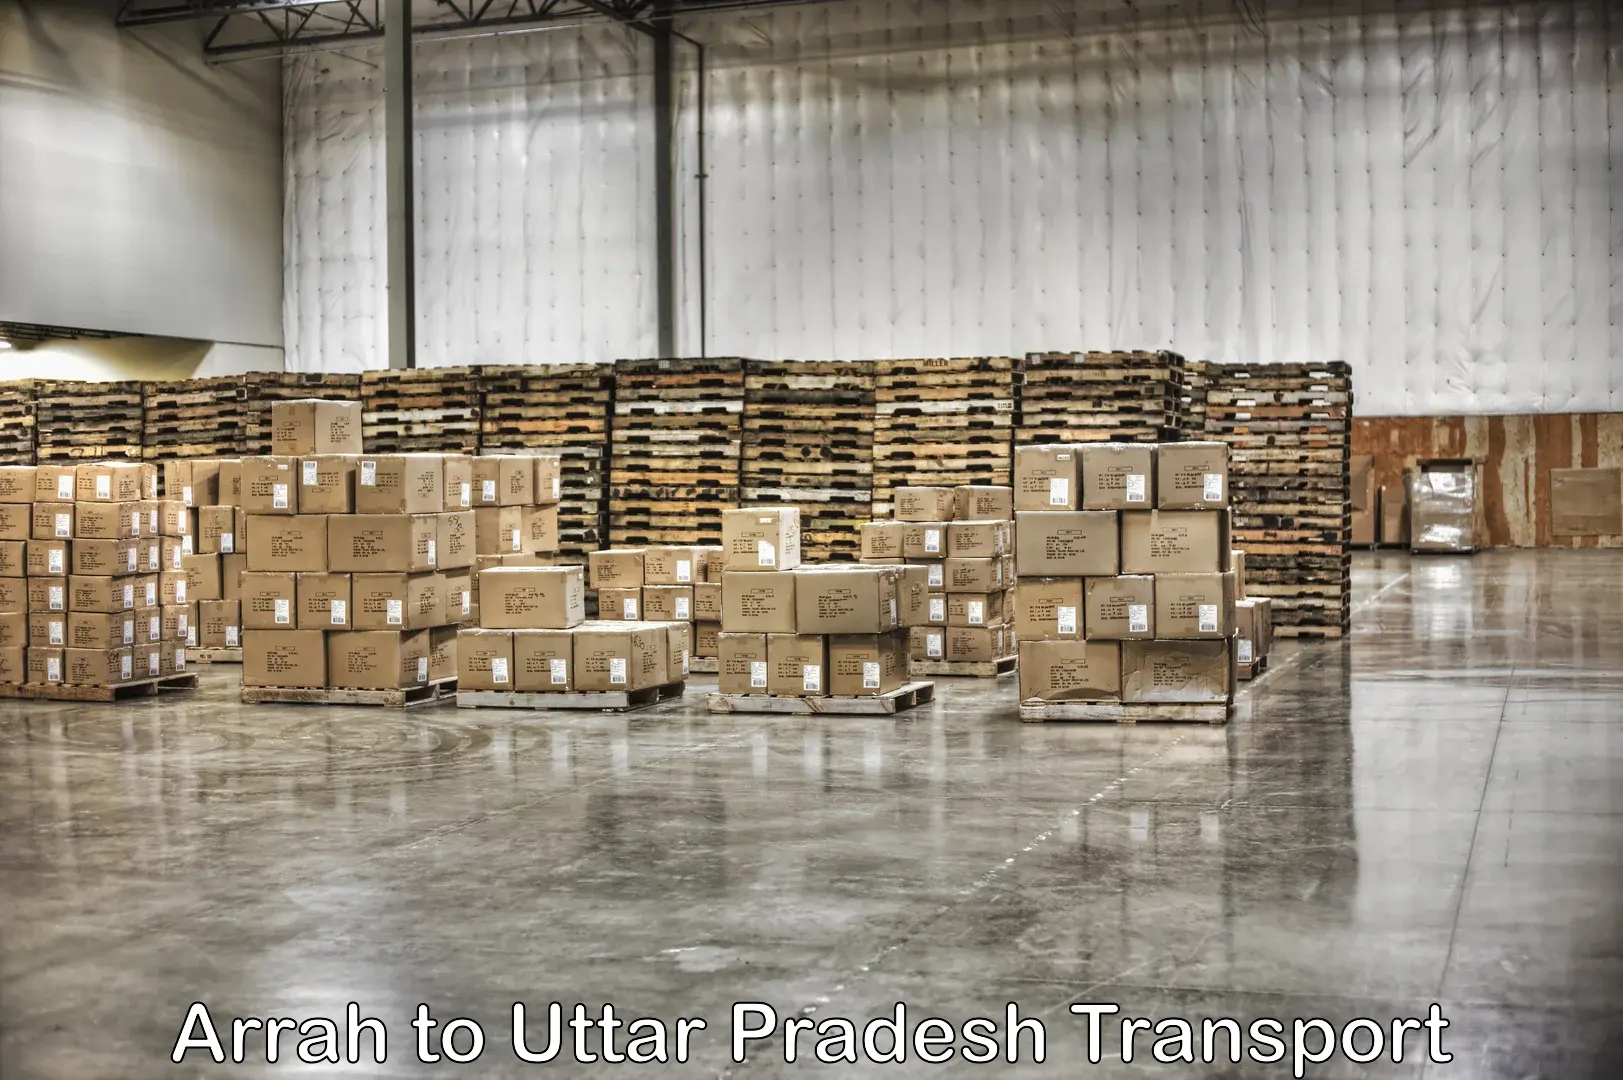 Commercial transport service Arrah to Uttar Pradesh